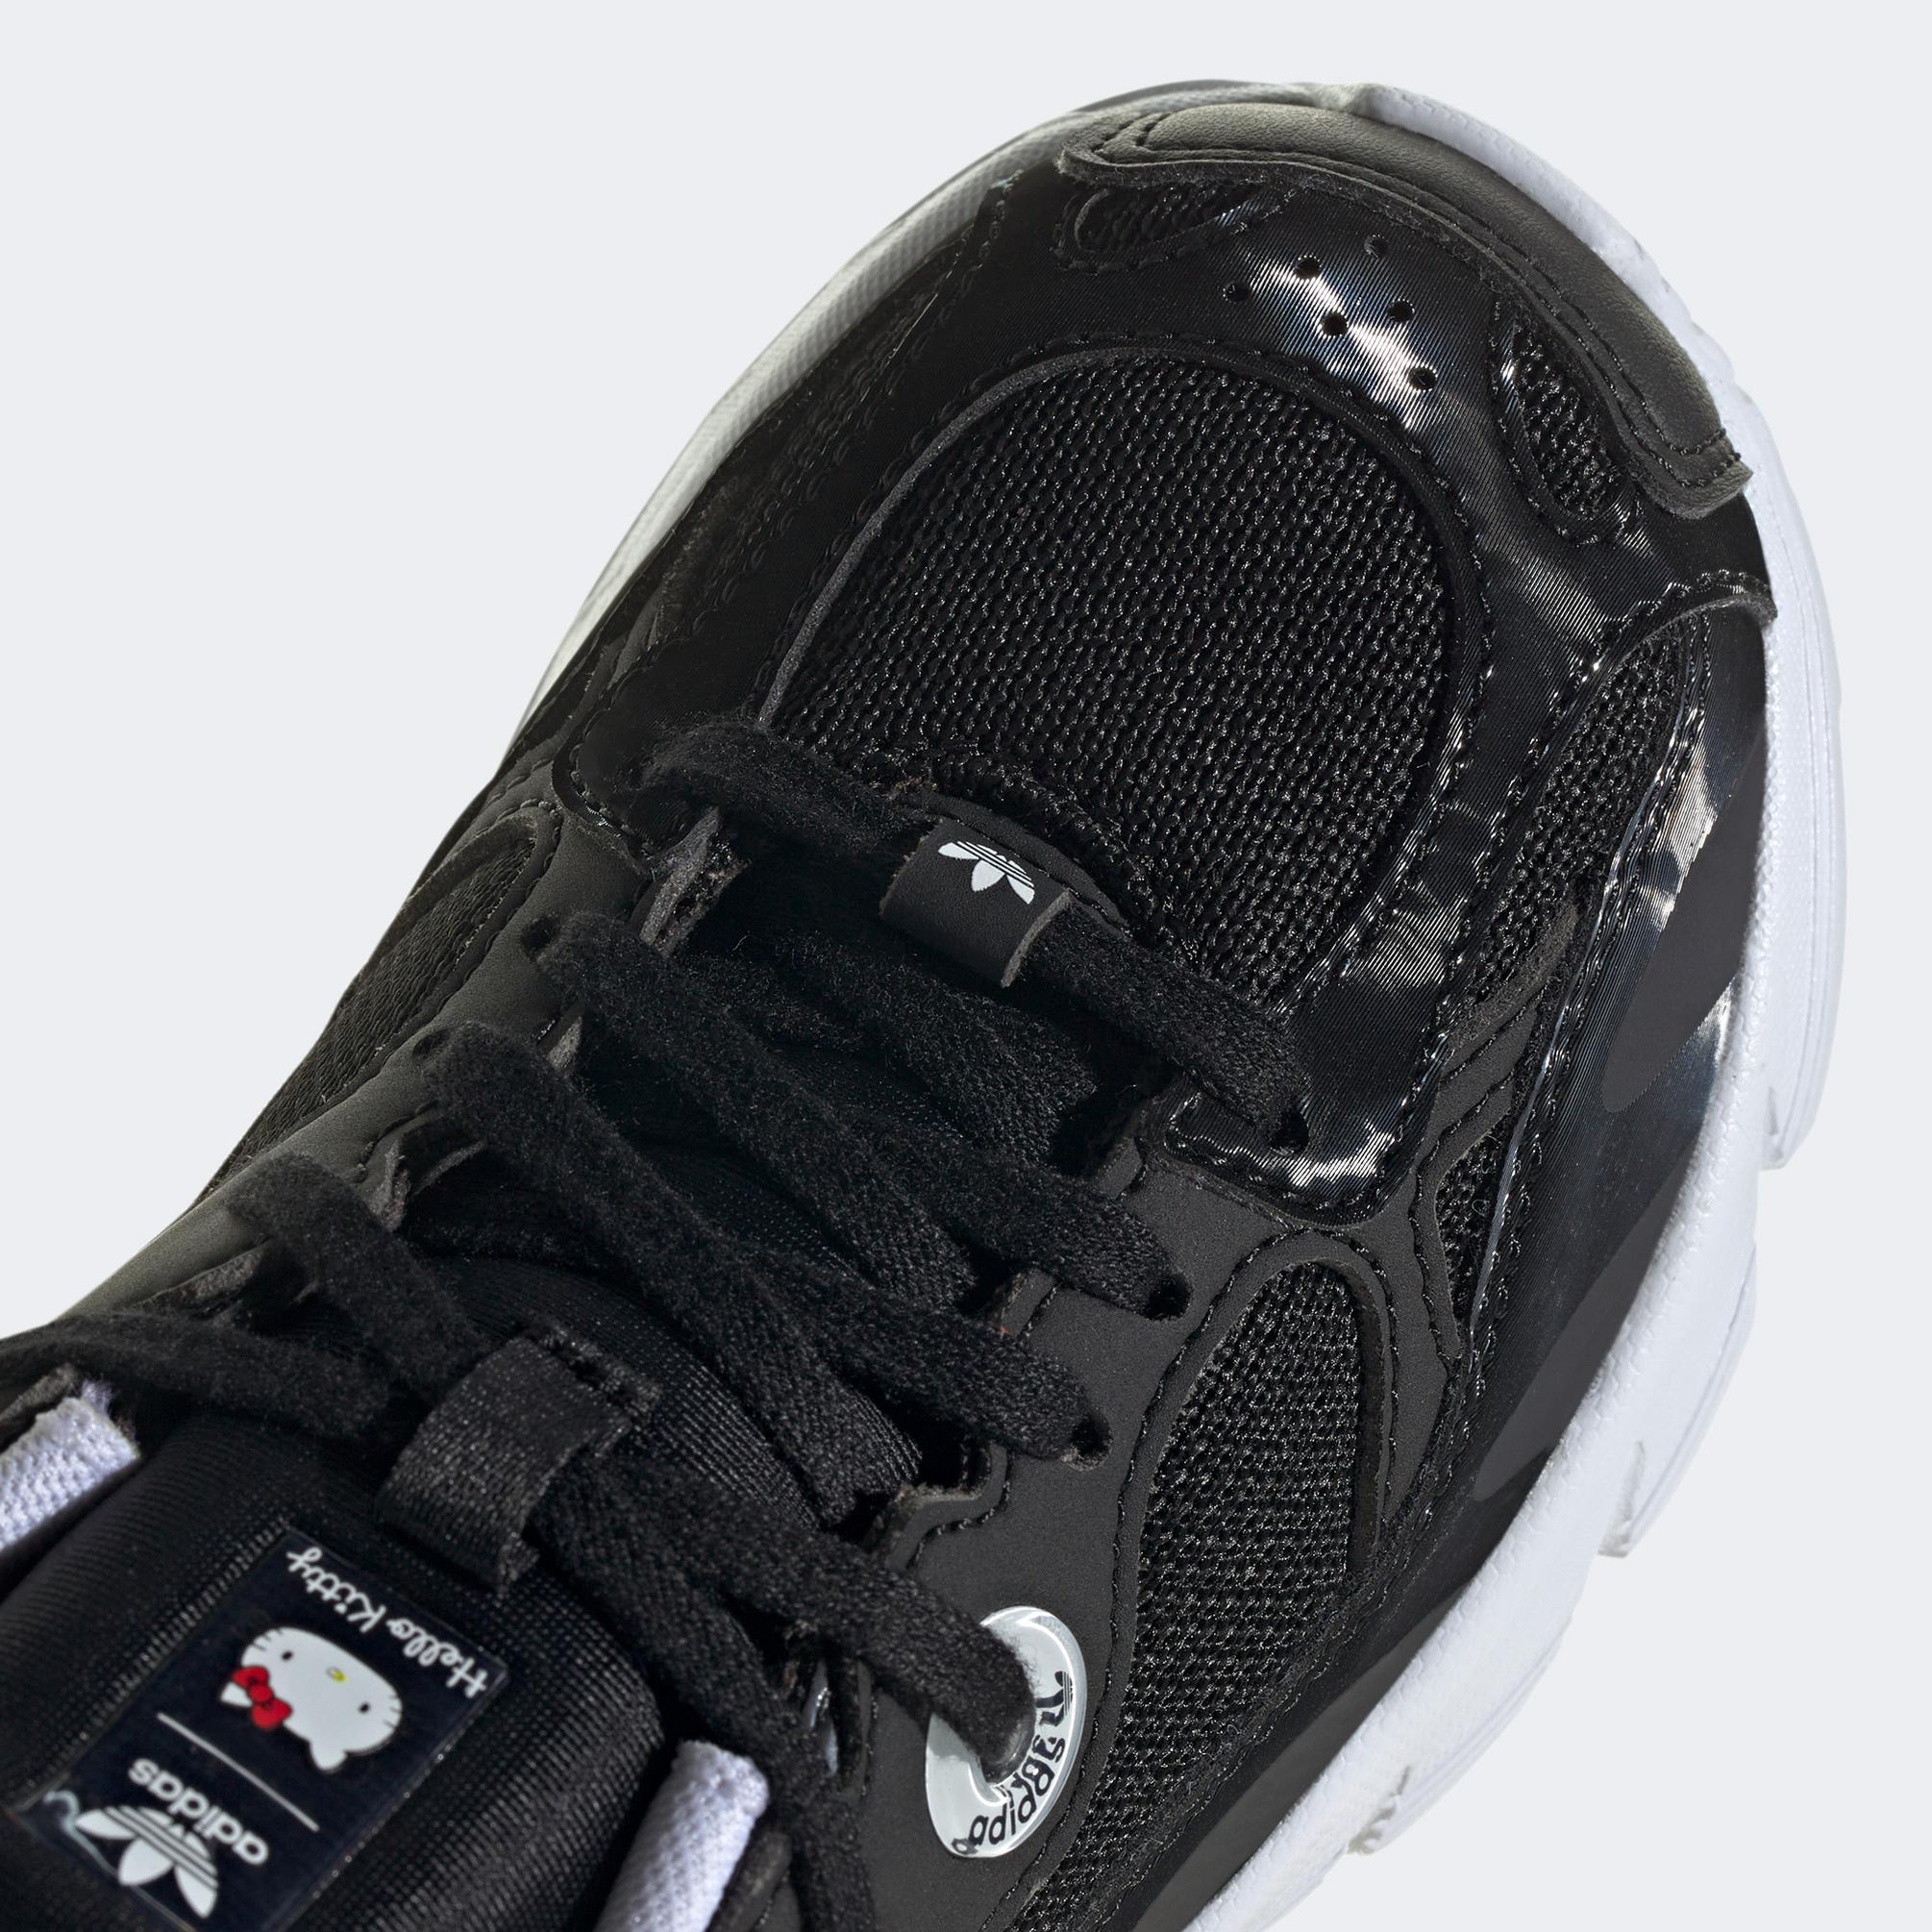  adidas x Hello Kitty Astir Çocuk Siyah Spor Ayakkabı